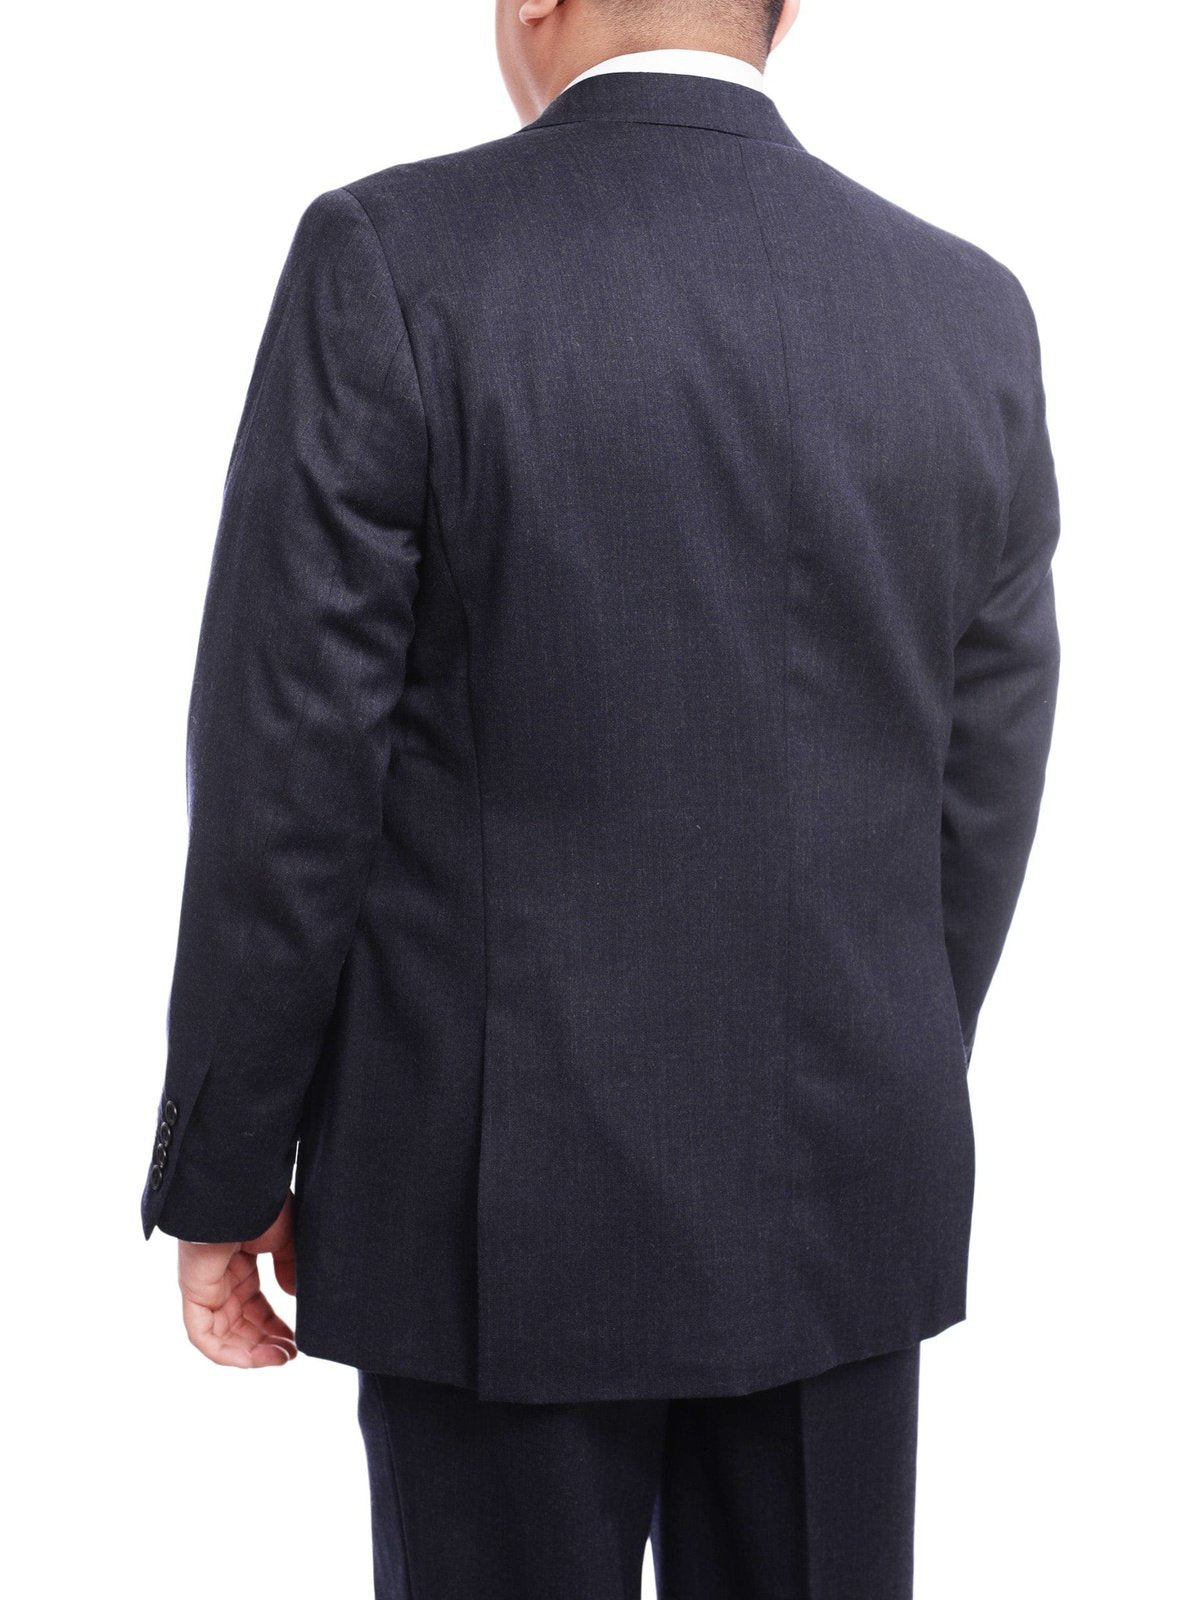 Arthur Black TWO PIECE SUITS Men's Arthur Black Executive Portly Fit Solid Blue Two Button 2 Piece Wool Suit